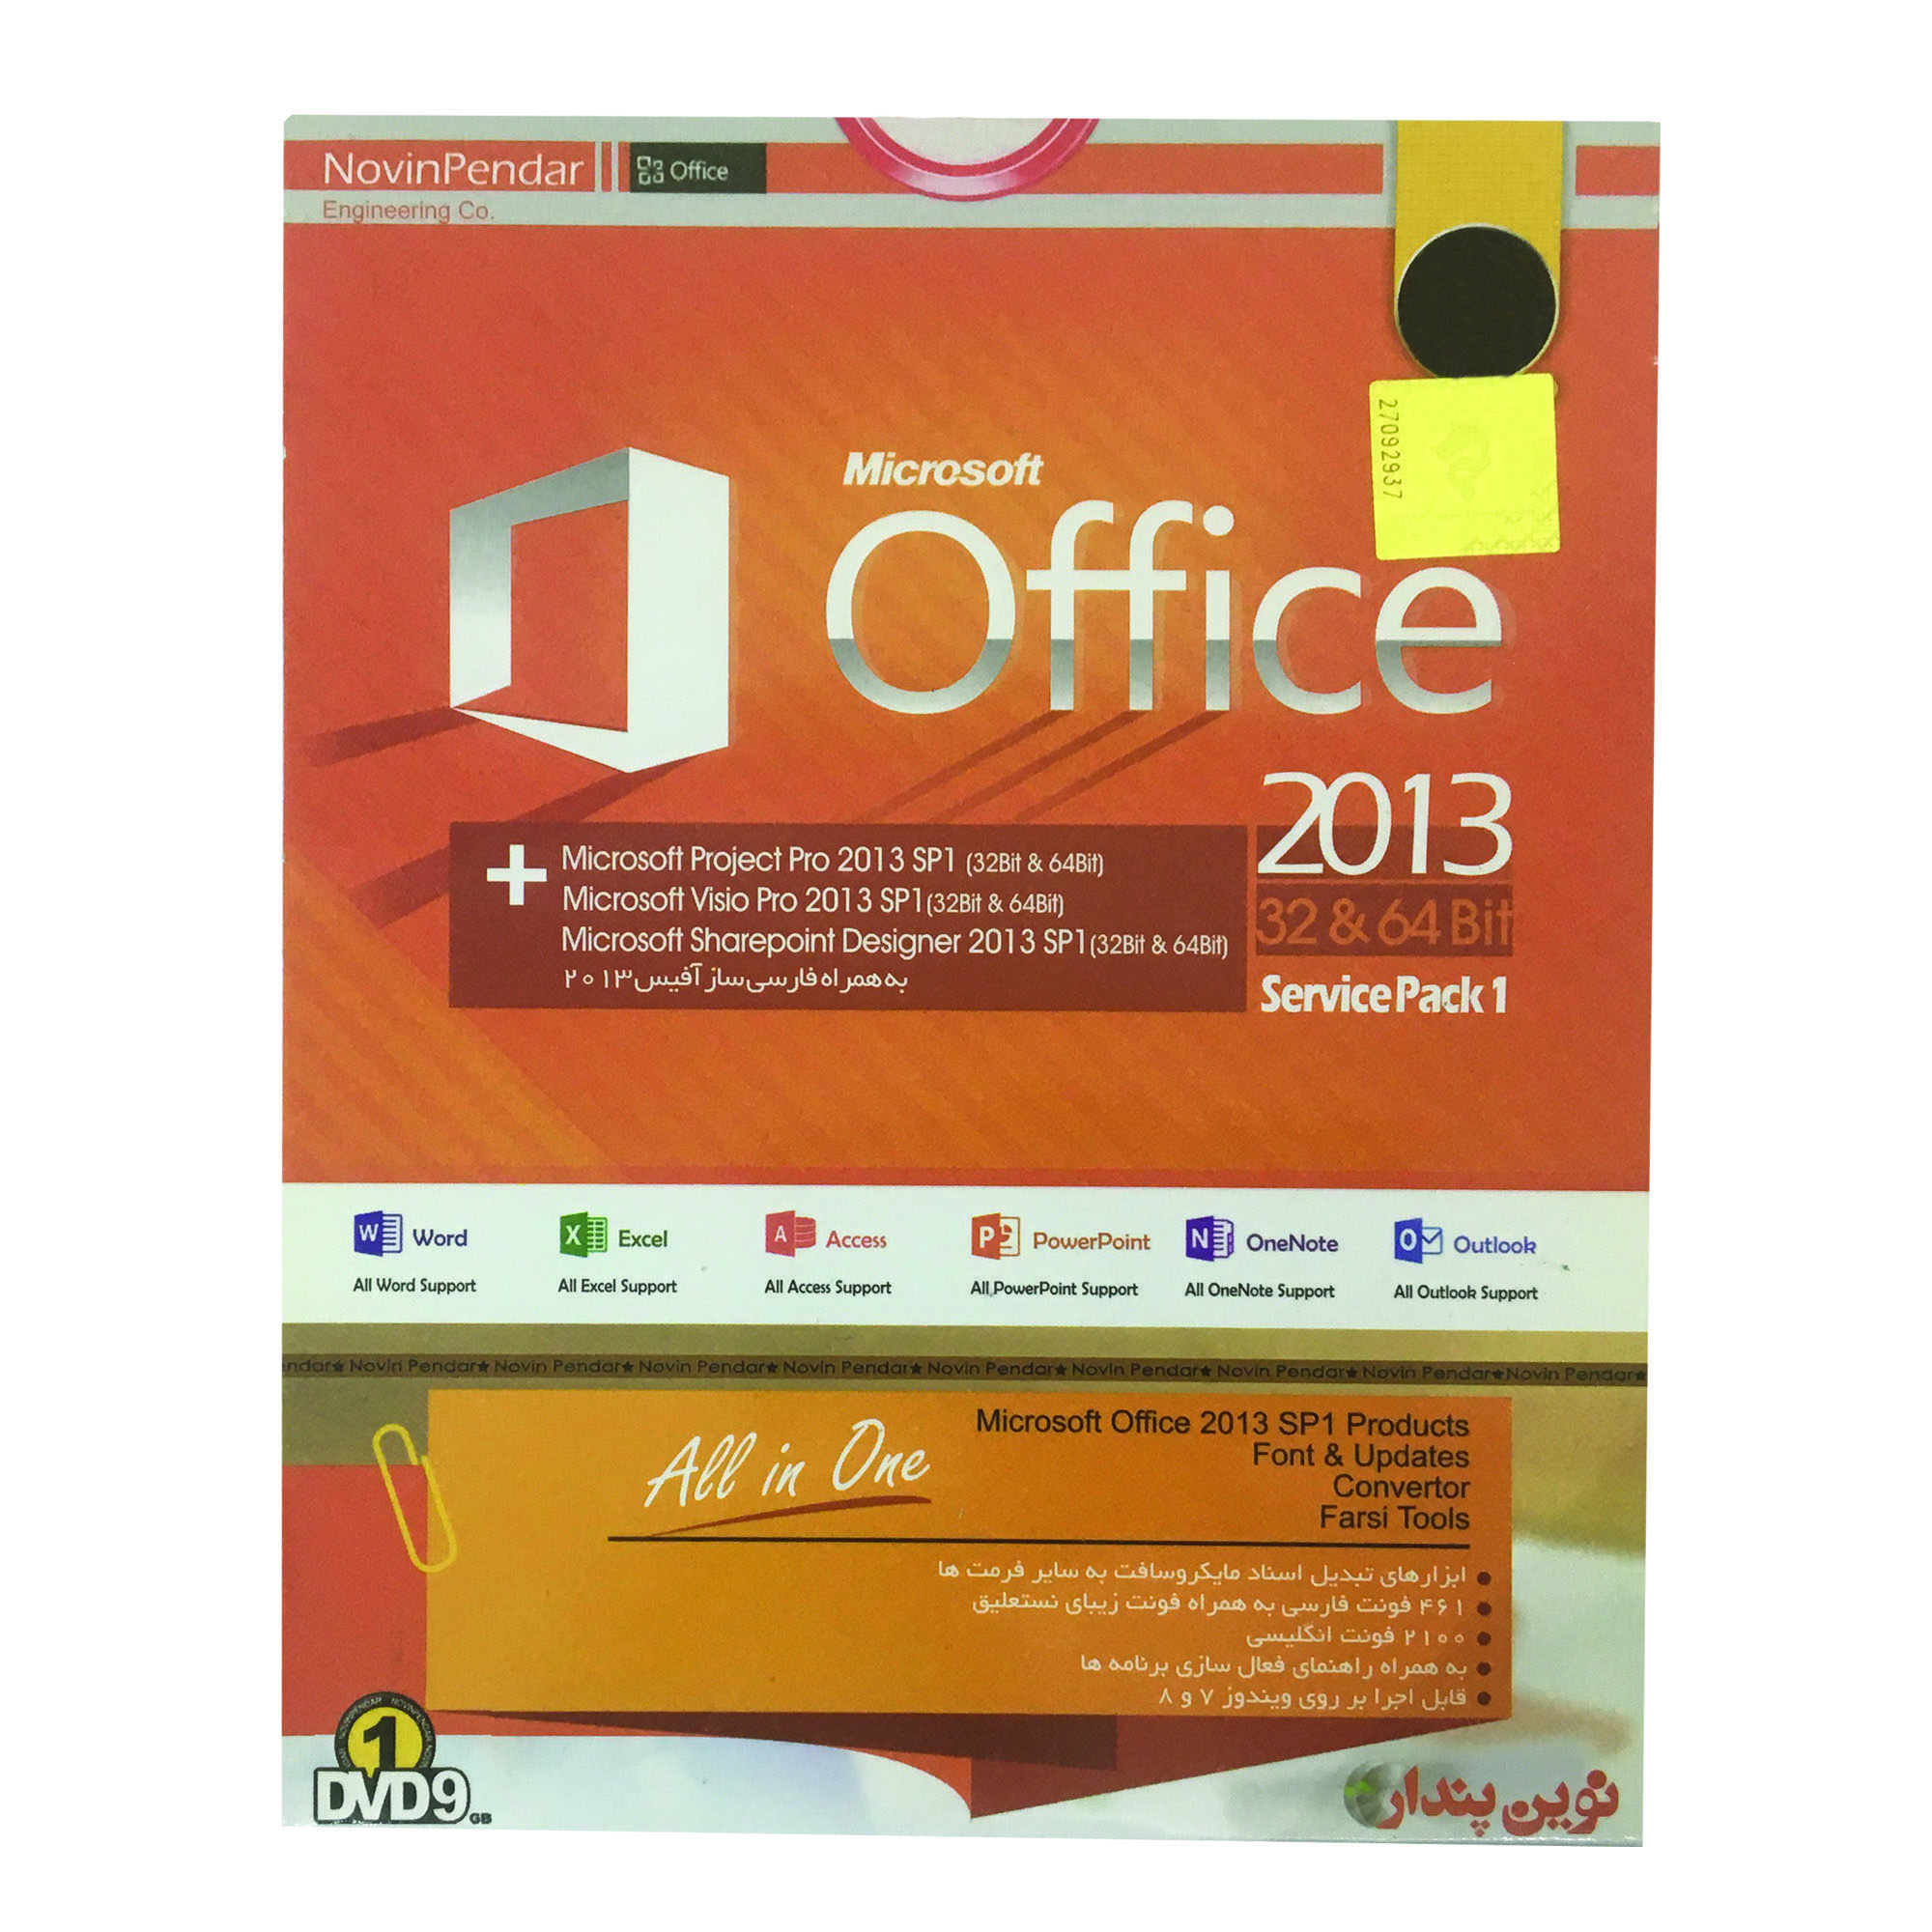 نرم افزار Office 2013 نشر نوین پندار